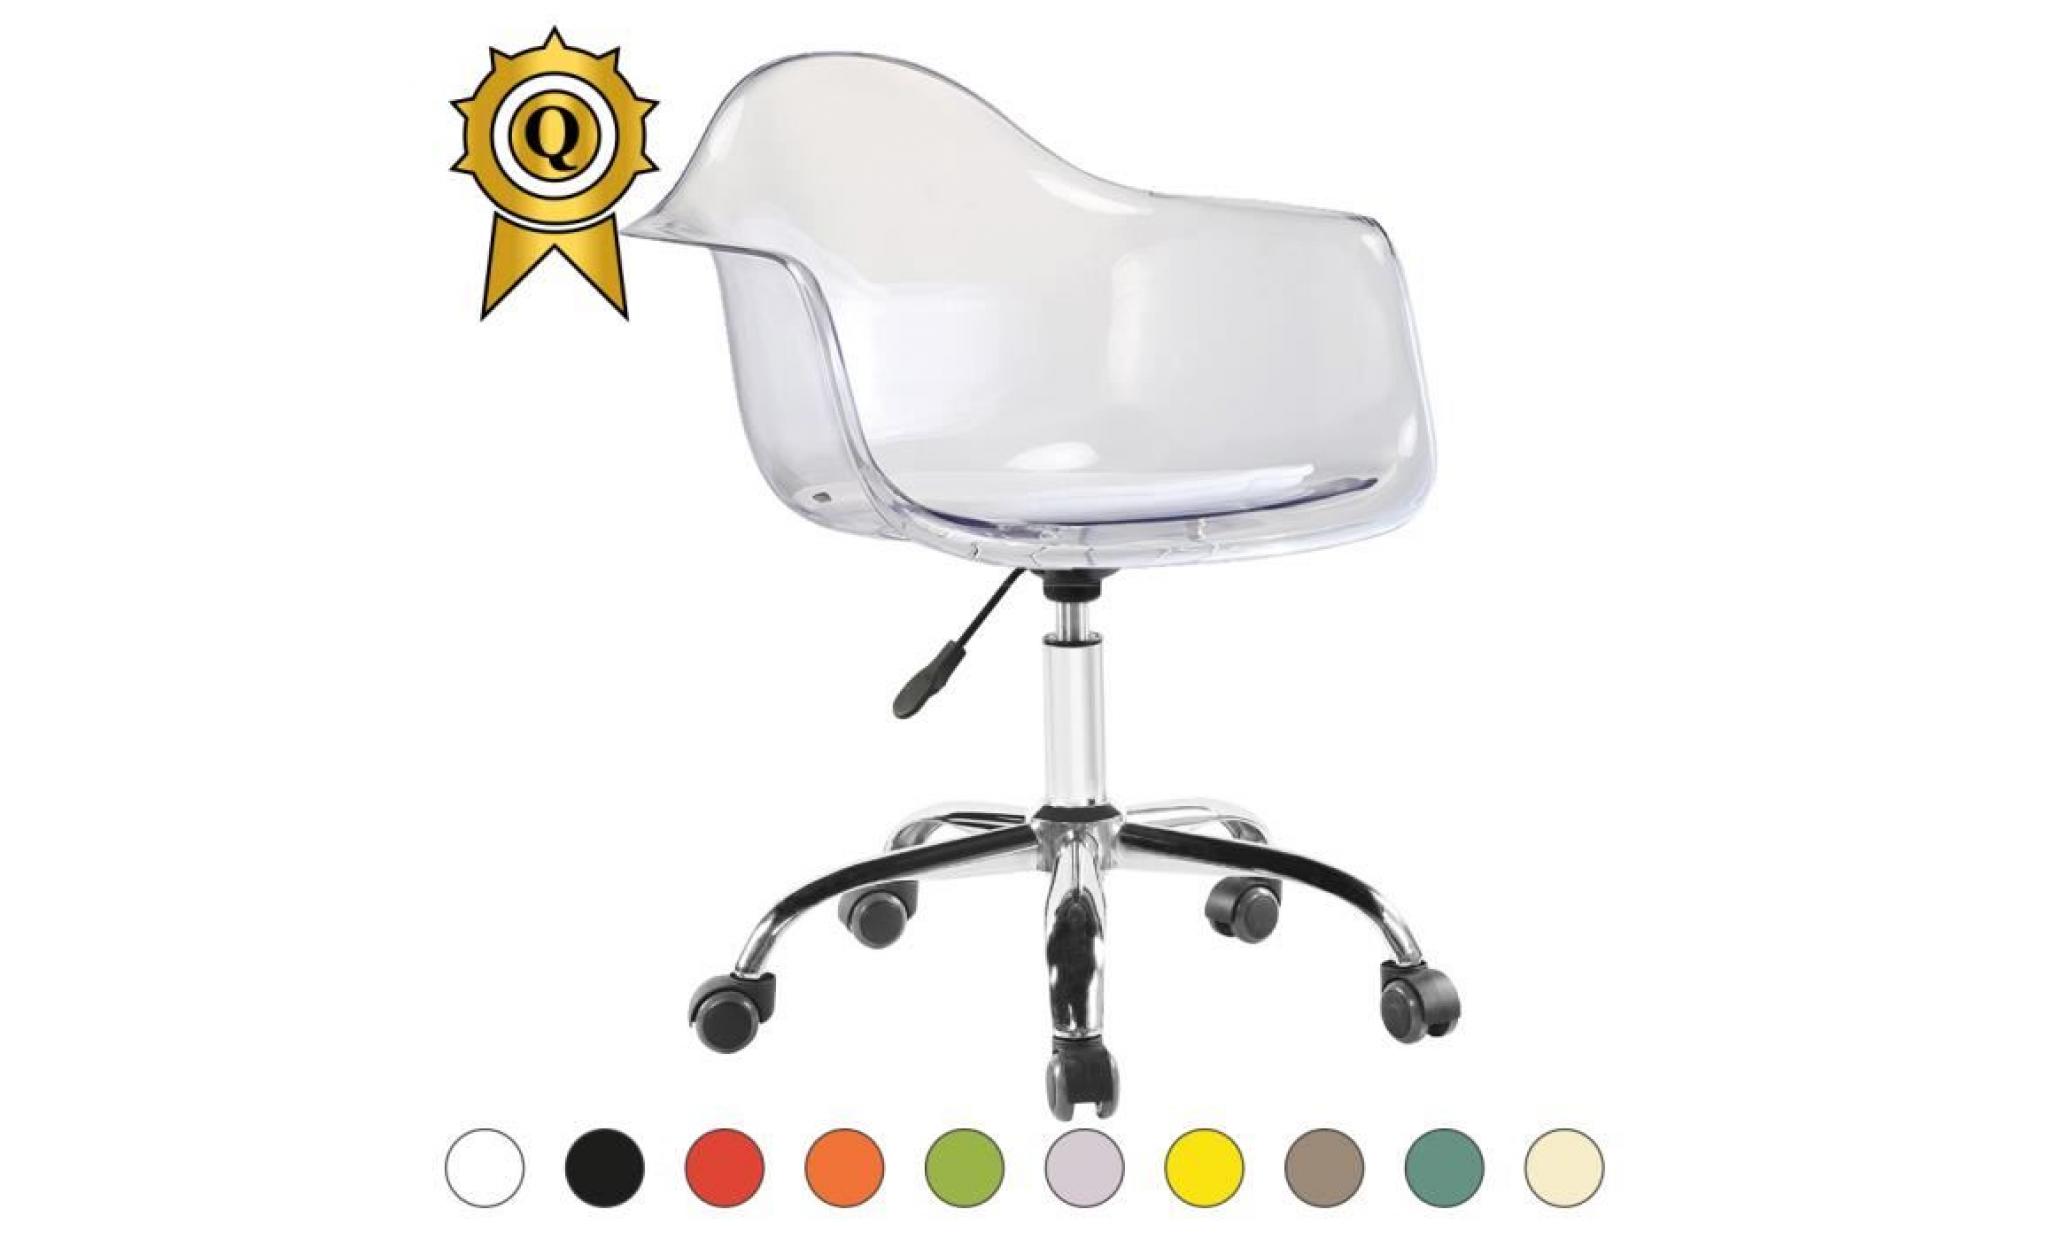 1 x fauteuil bureau style eames eiffel daw roulettes chrome pivotant assise reglable bleu marine mobistyl®